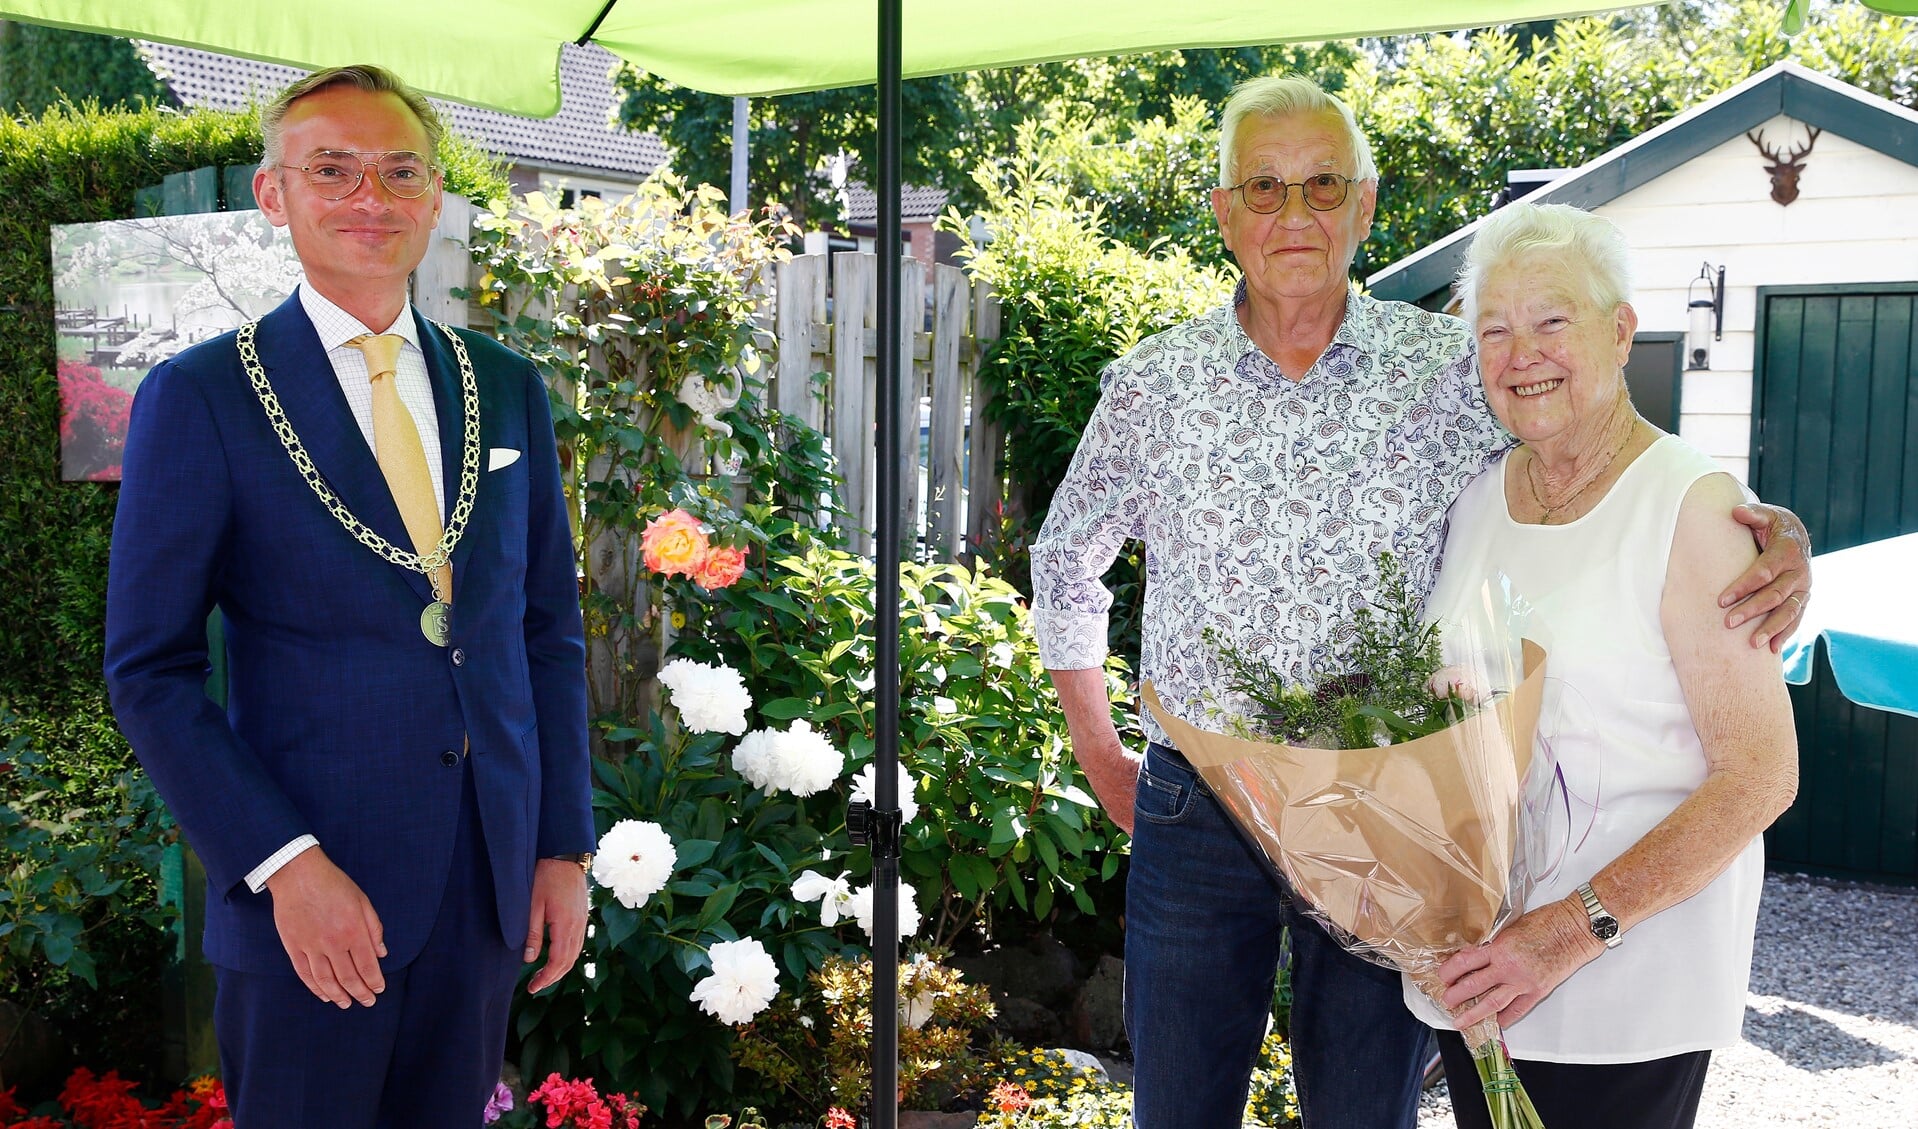 Maandag 14 juni bracht burgemeester Nanning Mol echtpaar Van Wessel-Struik een felicitatiebezoek voor hun 60-jarig huwelijksjubileum.